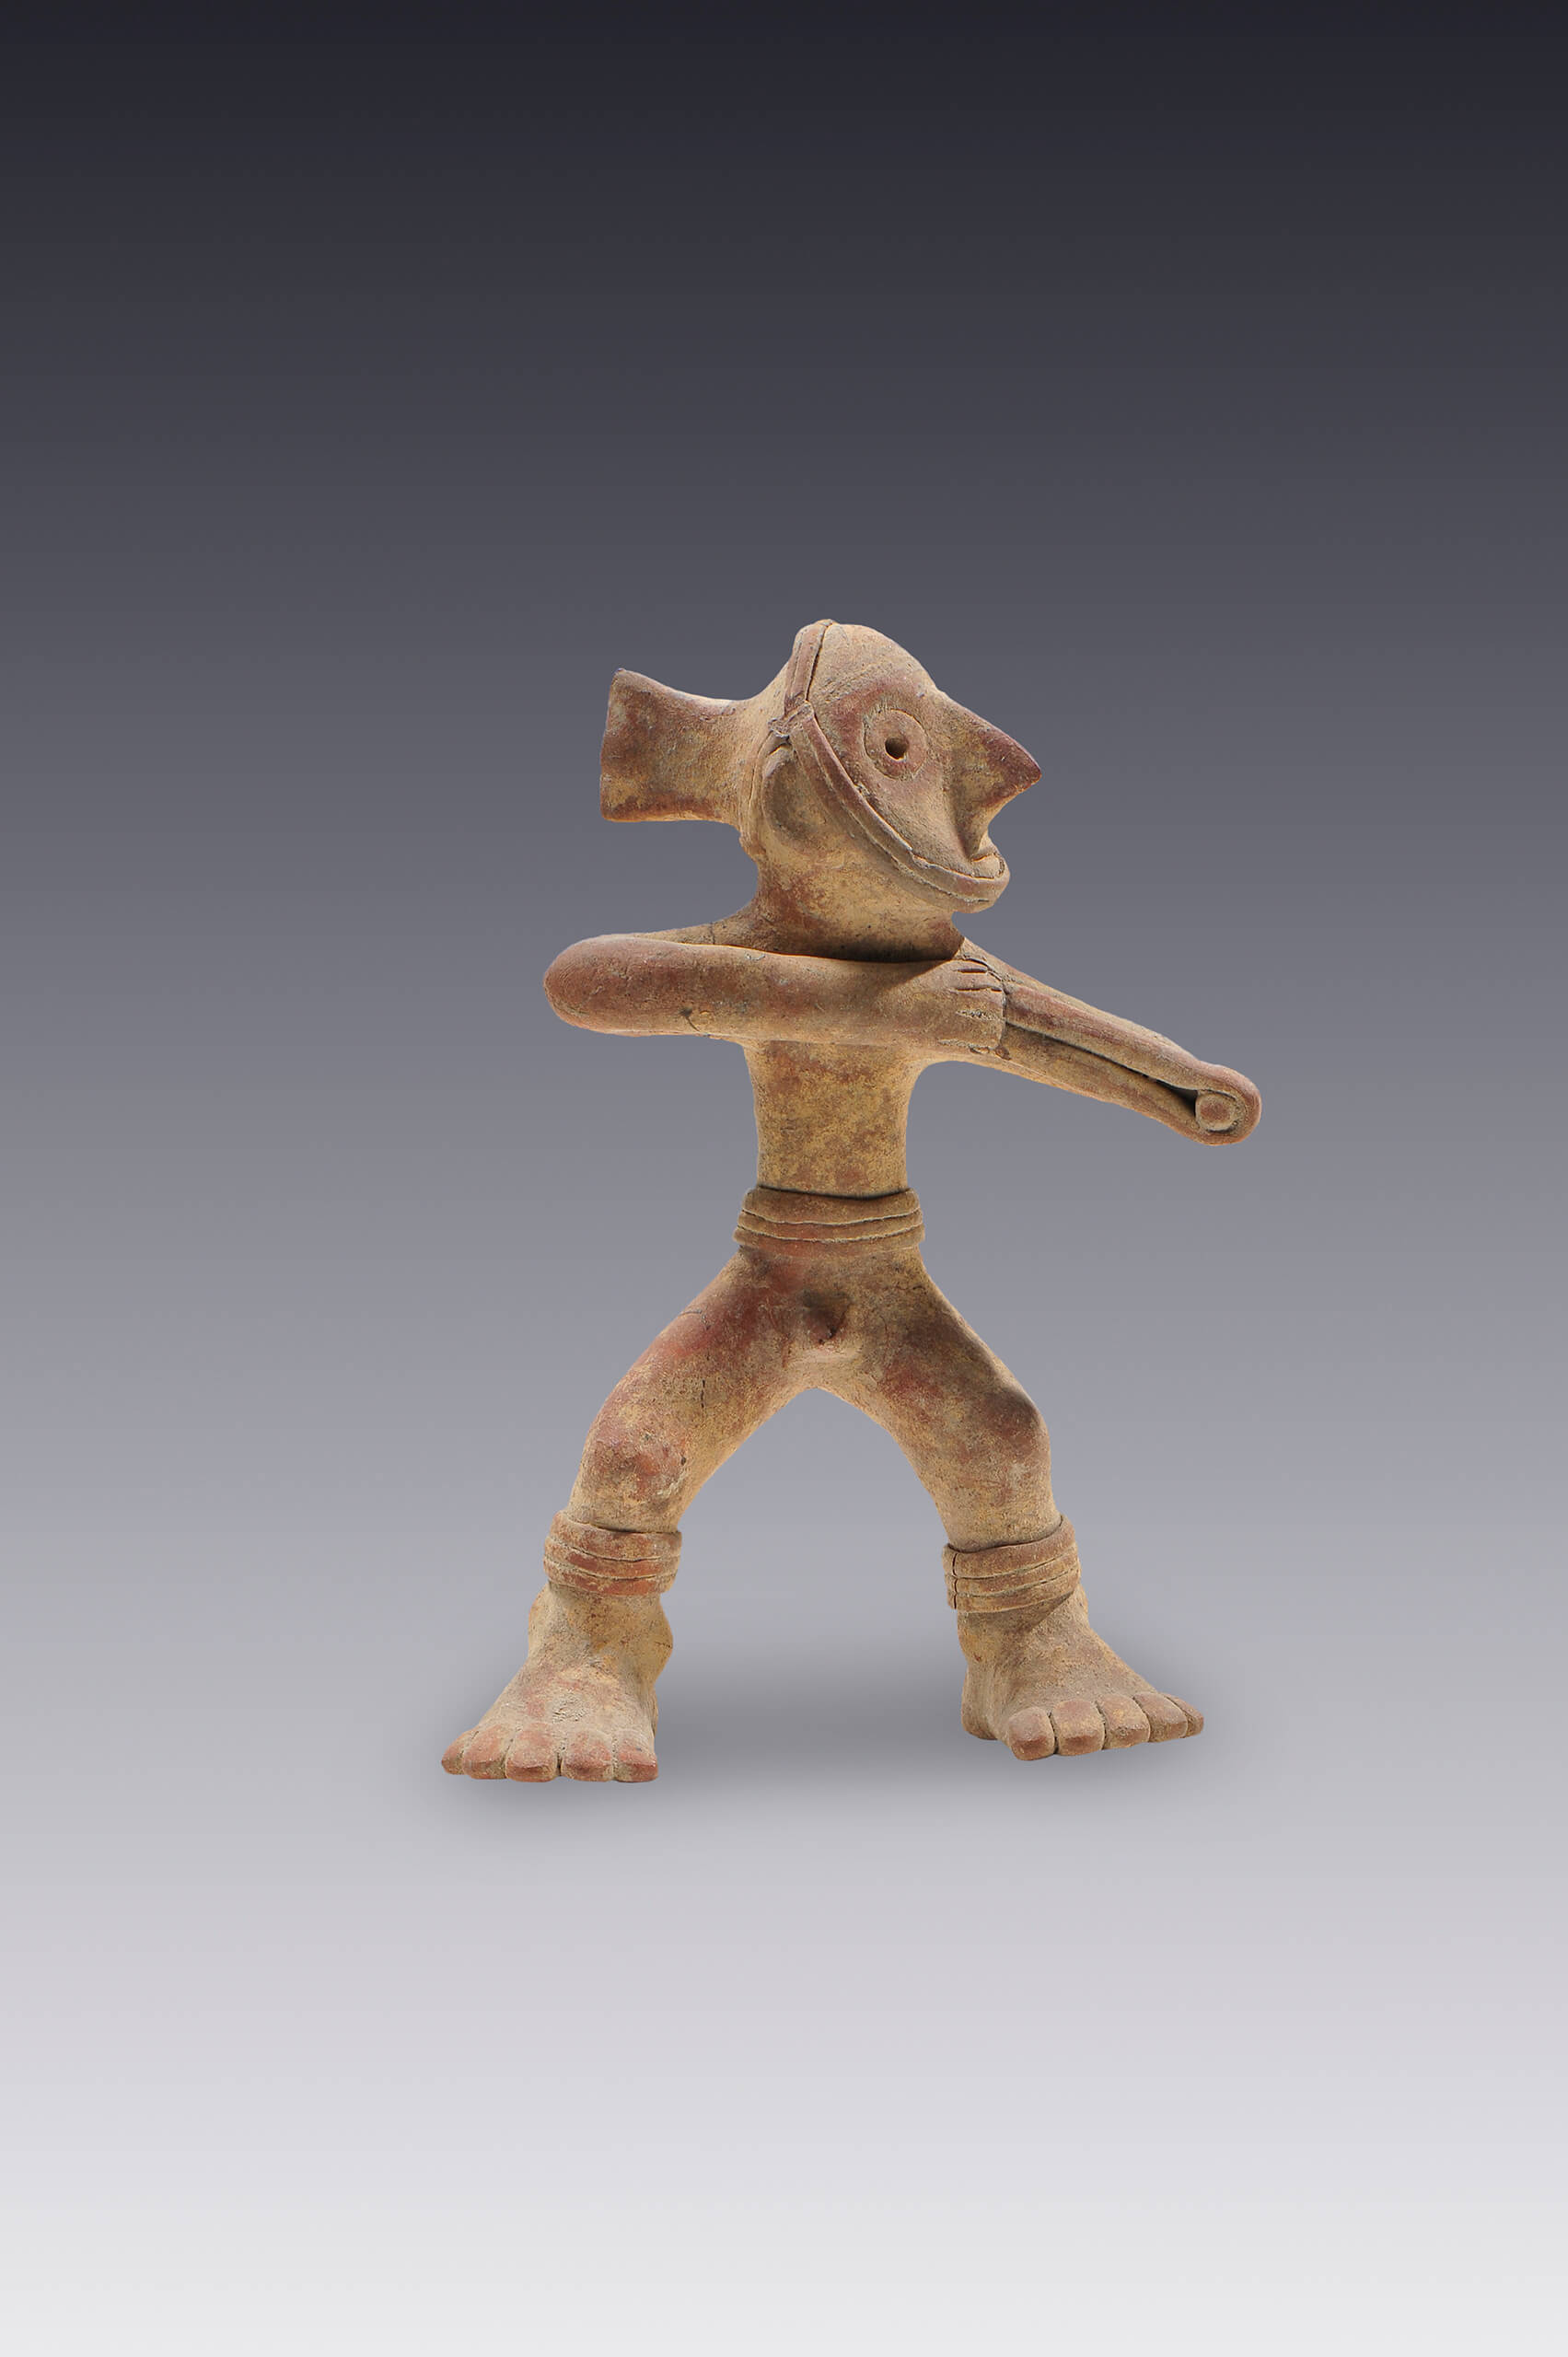 Silbato con figura de hombre que lanza con una honda | El México antiguo. Salas de Arte Prehispánico | Museo Amparo, Puebla